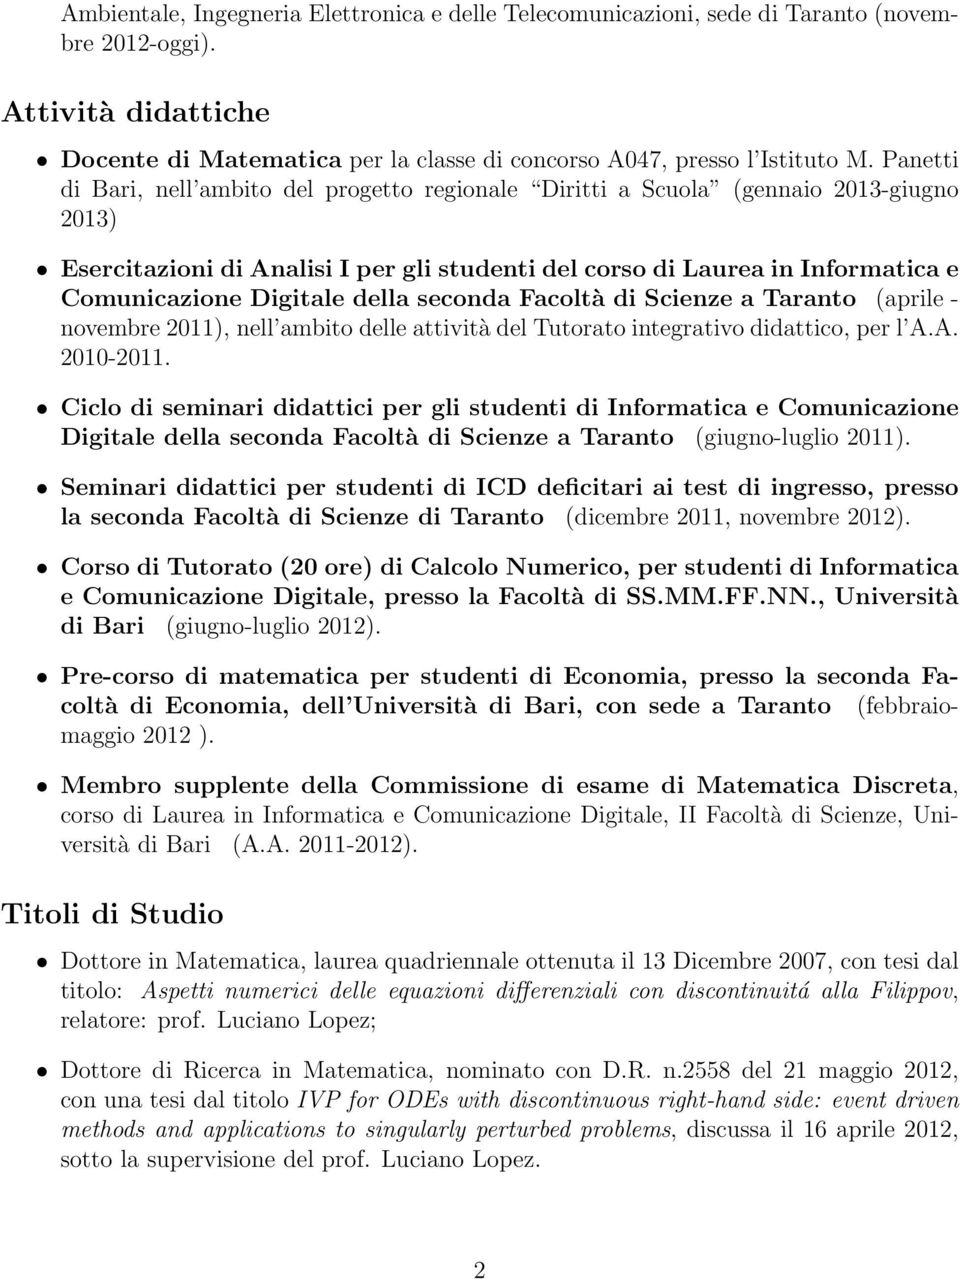 della seconda Facoltà di Scienze a Taranto (aprile - novembre 2011), nell ambito delle attività del Tutorato integrativo didattico, per l A.A. 2010-2011.